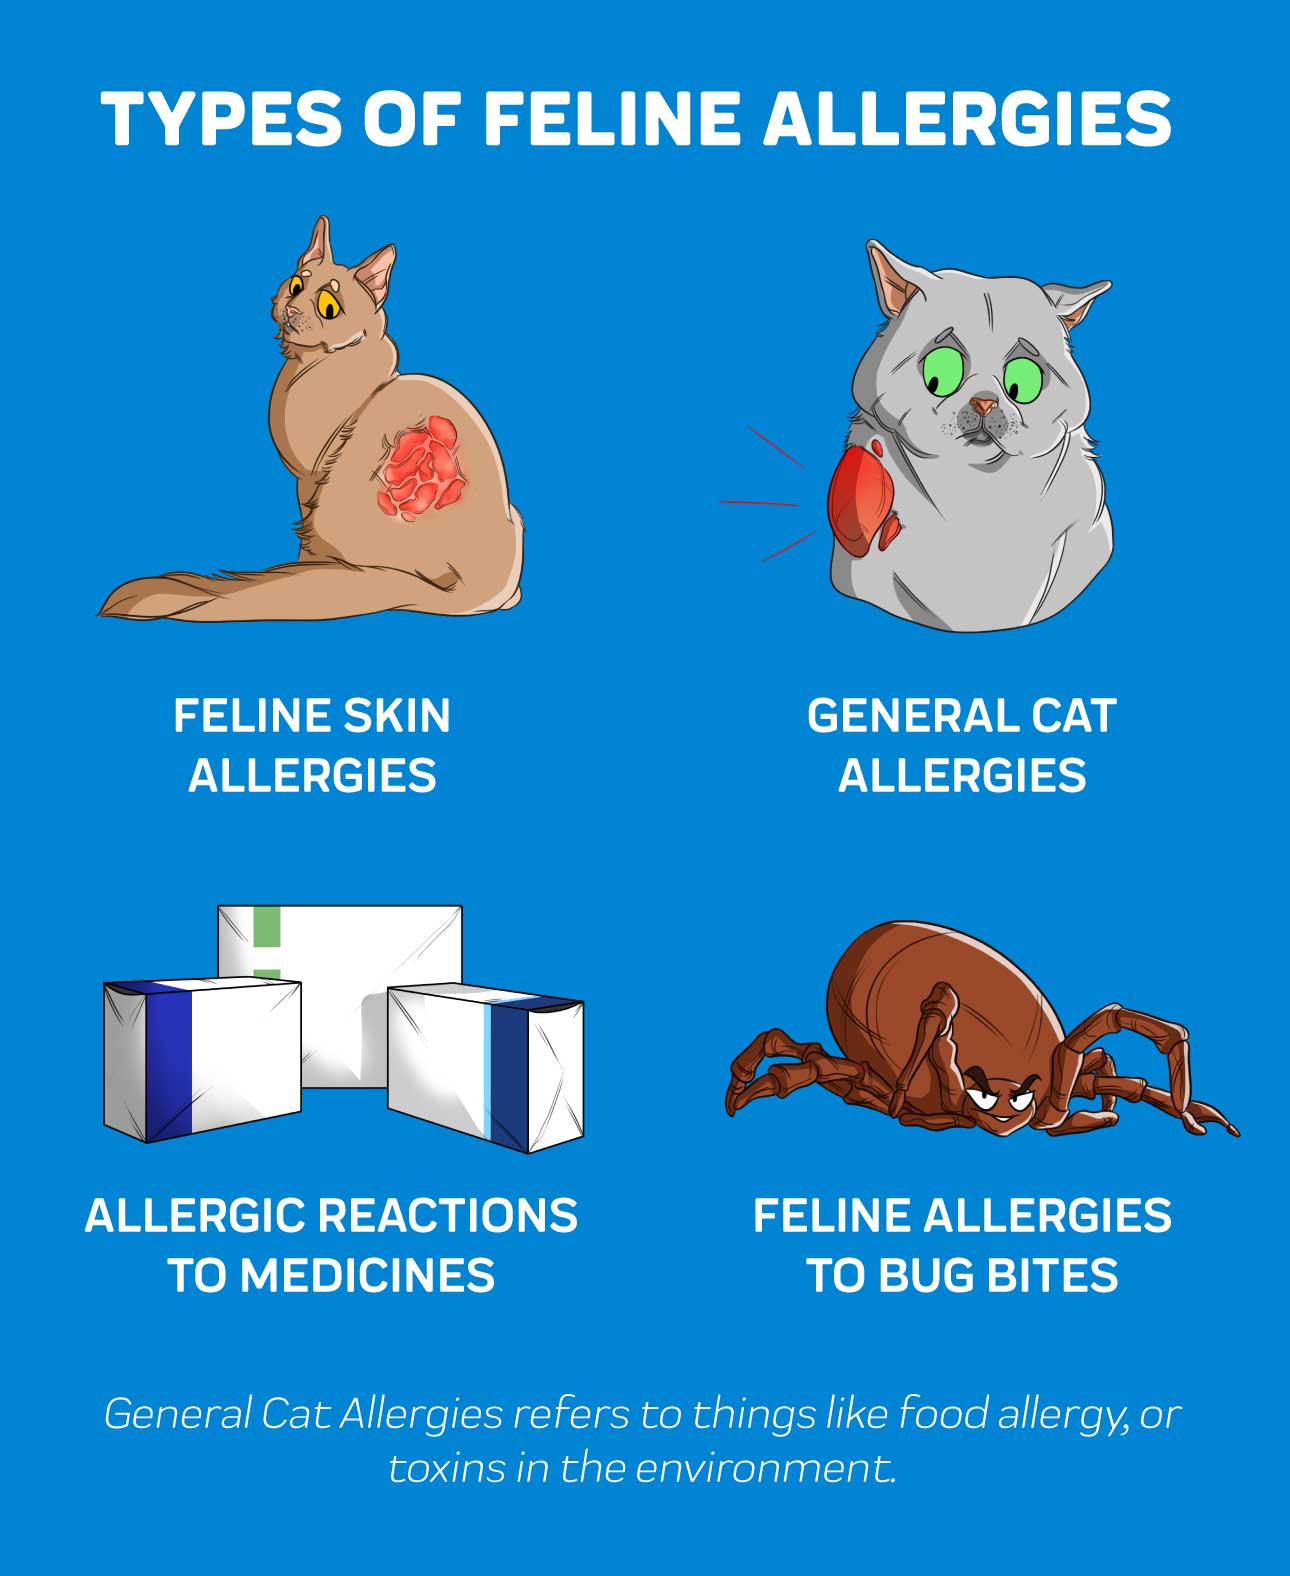 Types of Feline Allergies